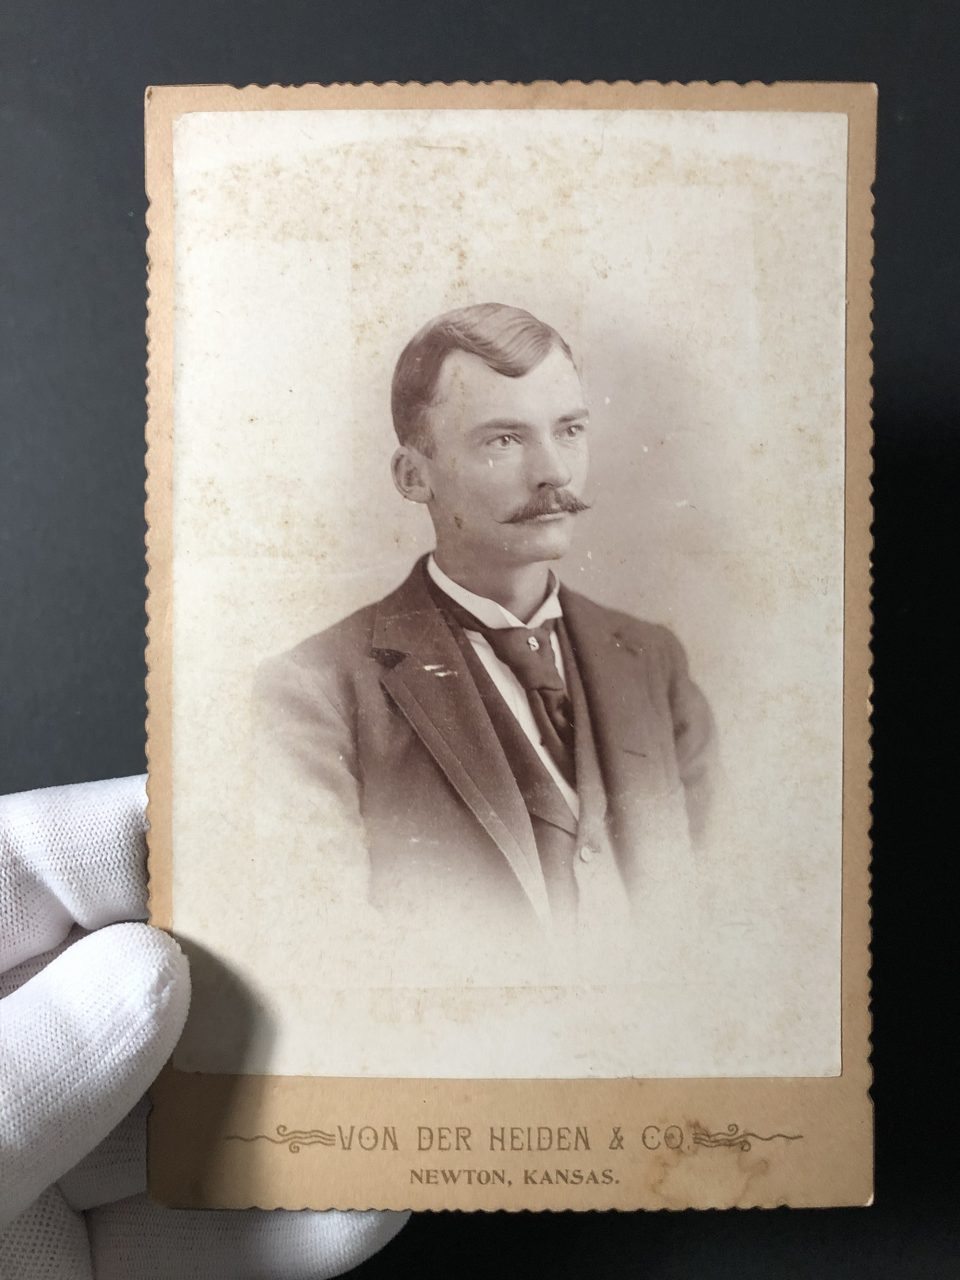 Cabinet card portrait of a young man likely taken in the 1880s by C.R. Von der Heiden in Newton, Kansas